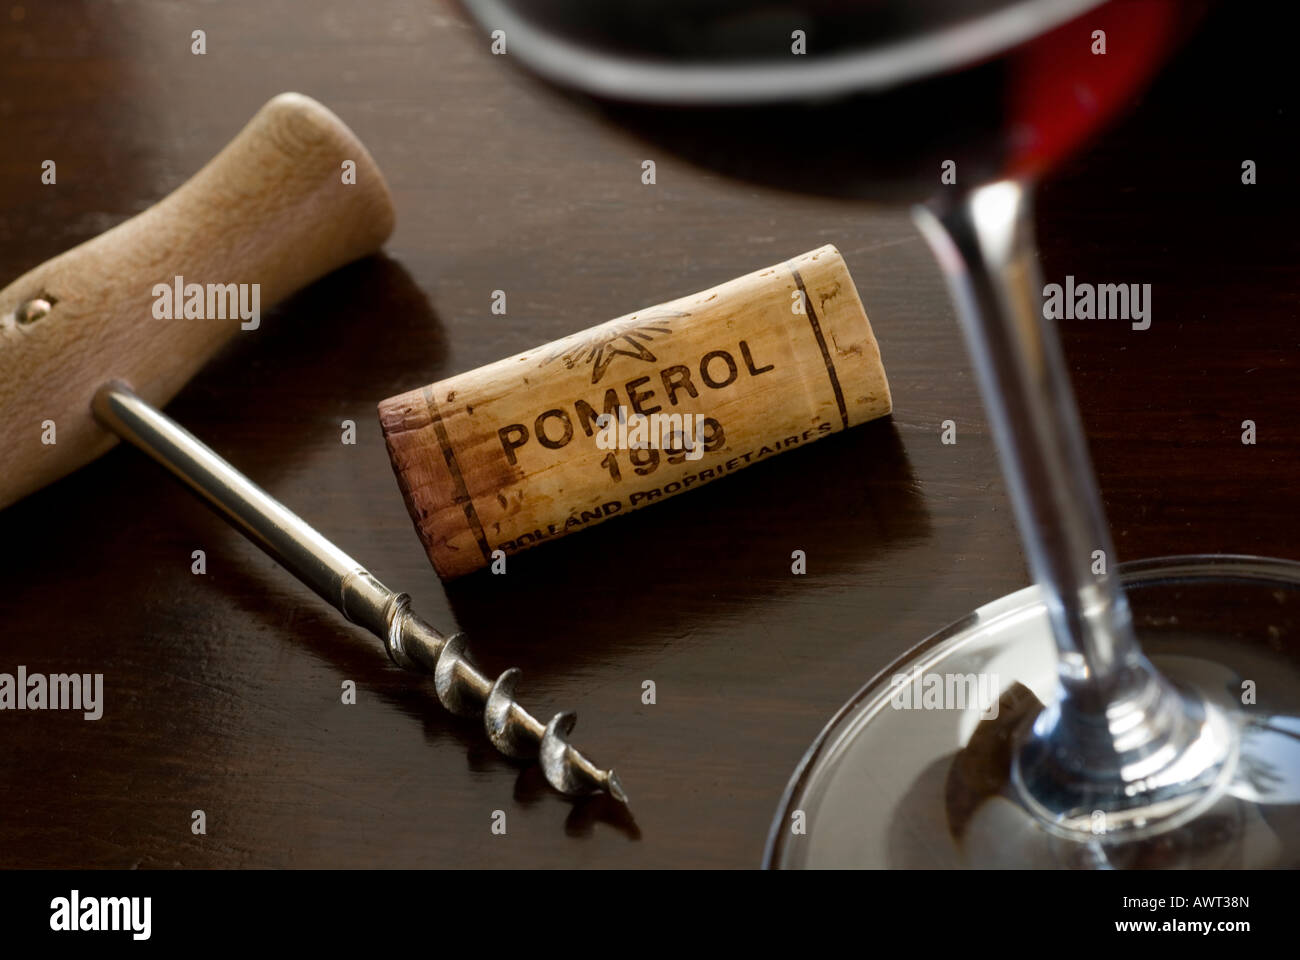 Struttura di cavatappi vino rosso e vetro 1999 Pomerol cork sulla tavola di degustazione Foto Stock